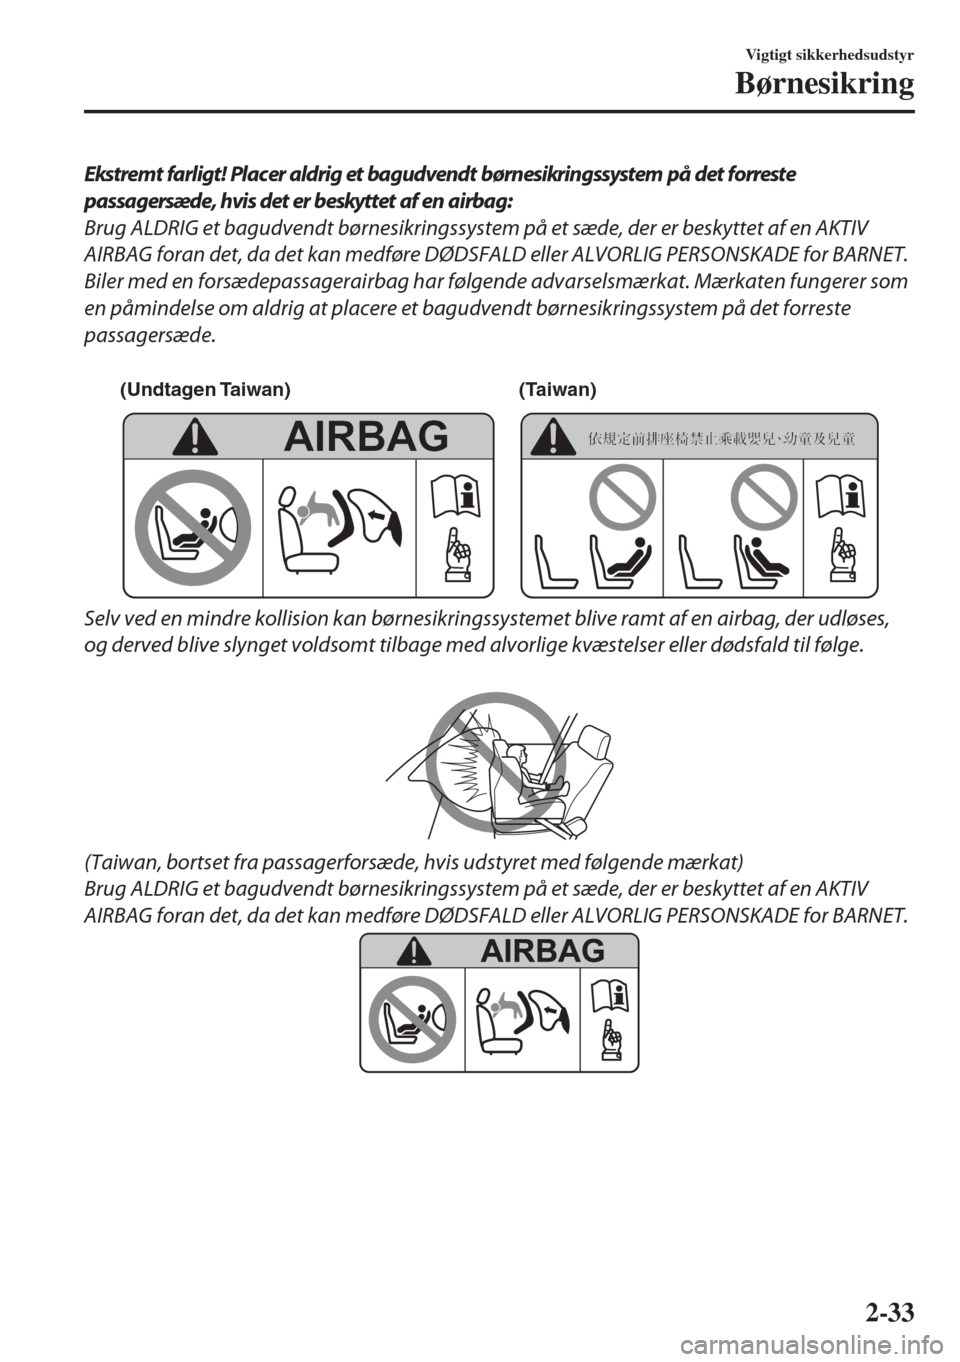 MAZDA MODEL 6 2018  Instruktionsbog (in Danish) Ekstremt farligt! Placer aldrig et bagudvendt børnesikringssystem på det forreste
passagersæde, hvis det er beskyttet af en airbag:
Brug ALDRIG et bagudvendt børnesikringssystem på et sæde, der 